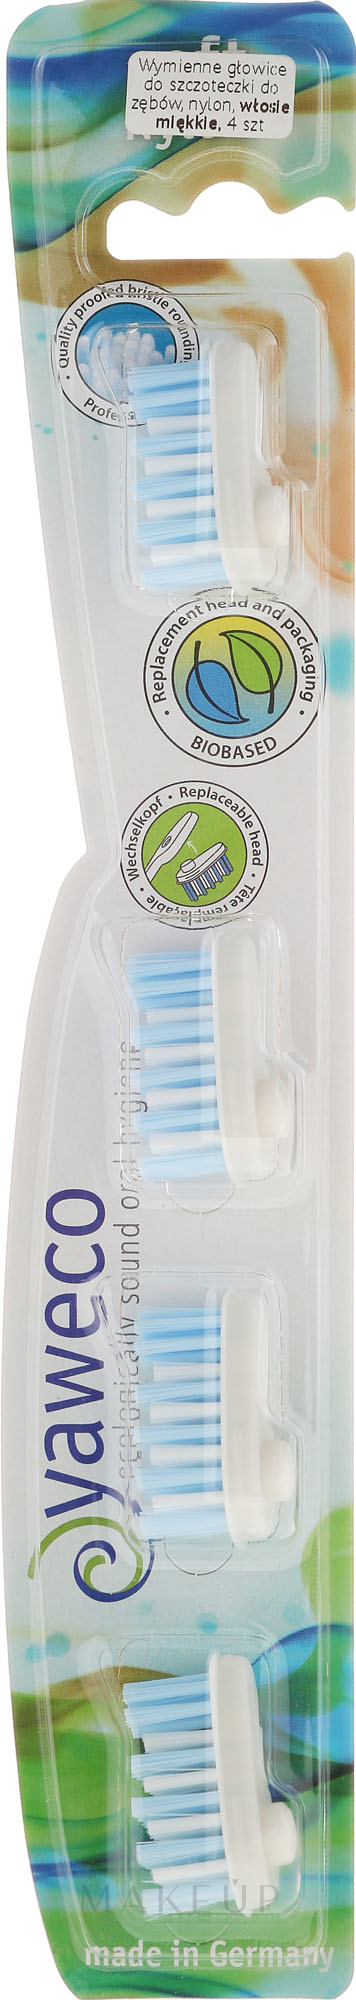 Austauschbare Zahnbürstenköpfe weich 4 St. - Yaweco Toothbrush Heads Nylon Soft — Bild 4 St.